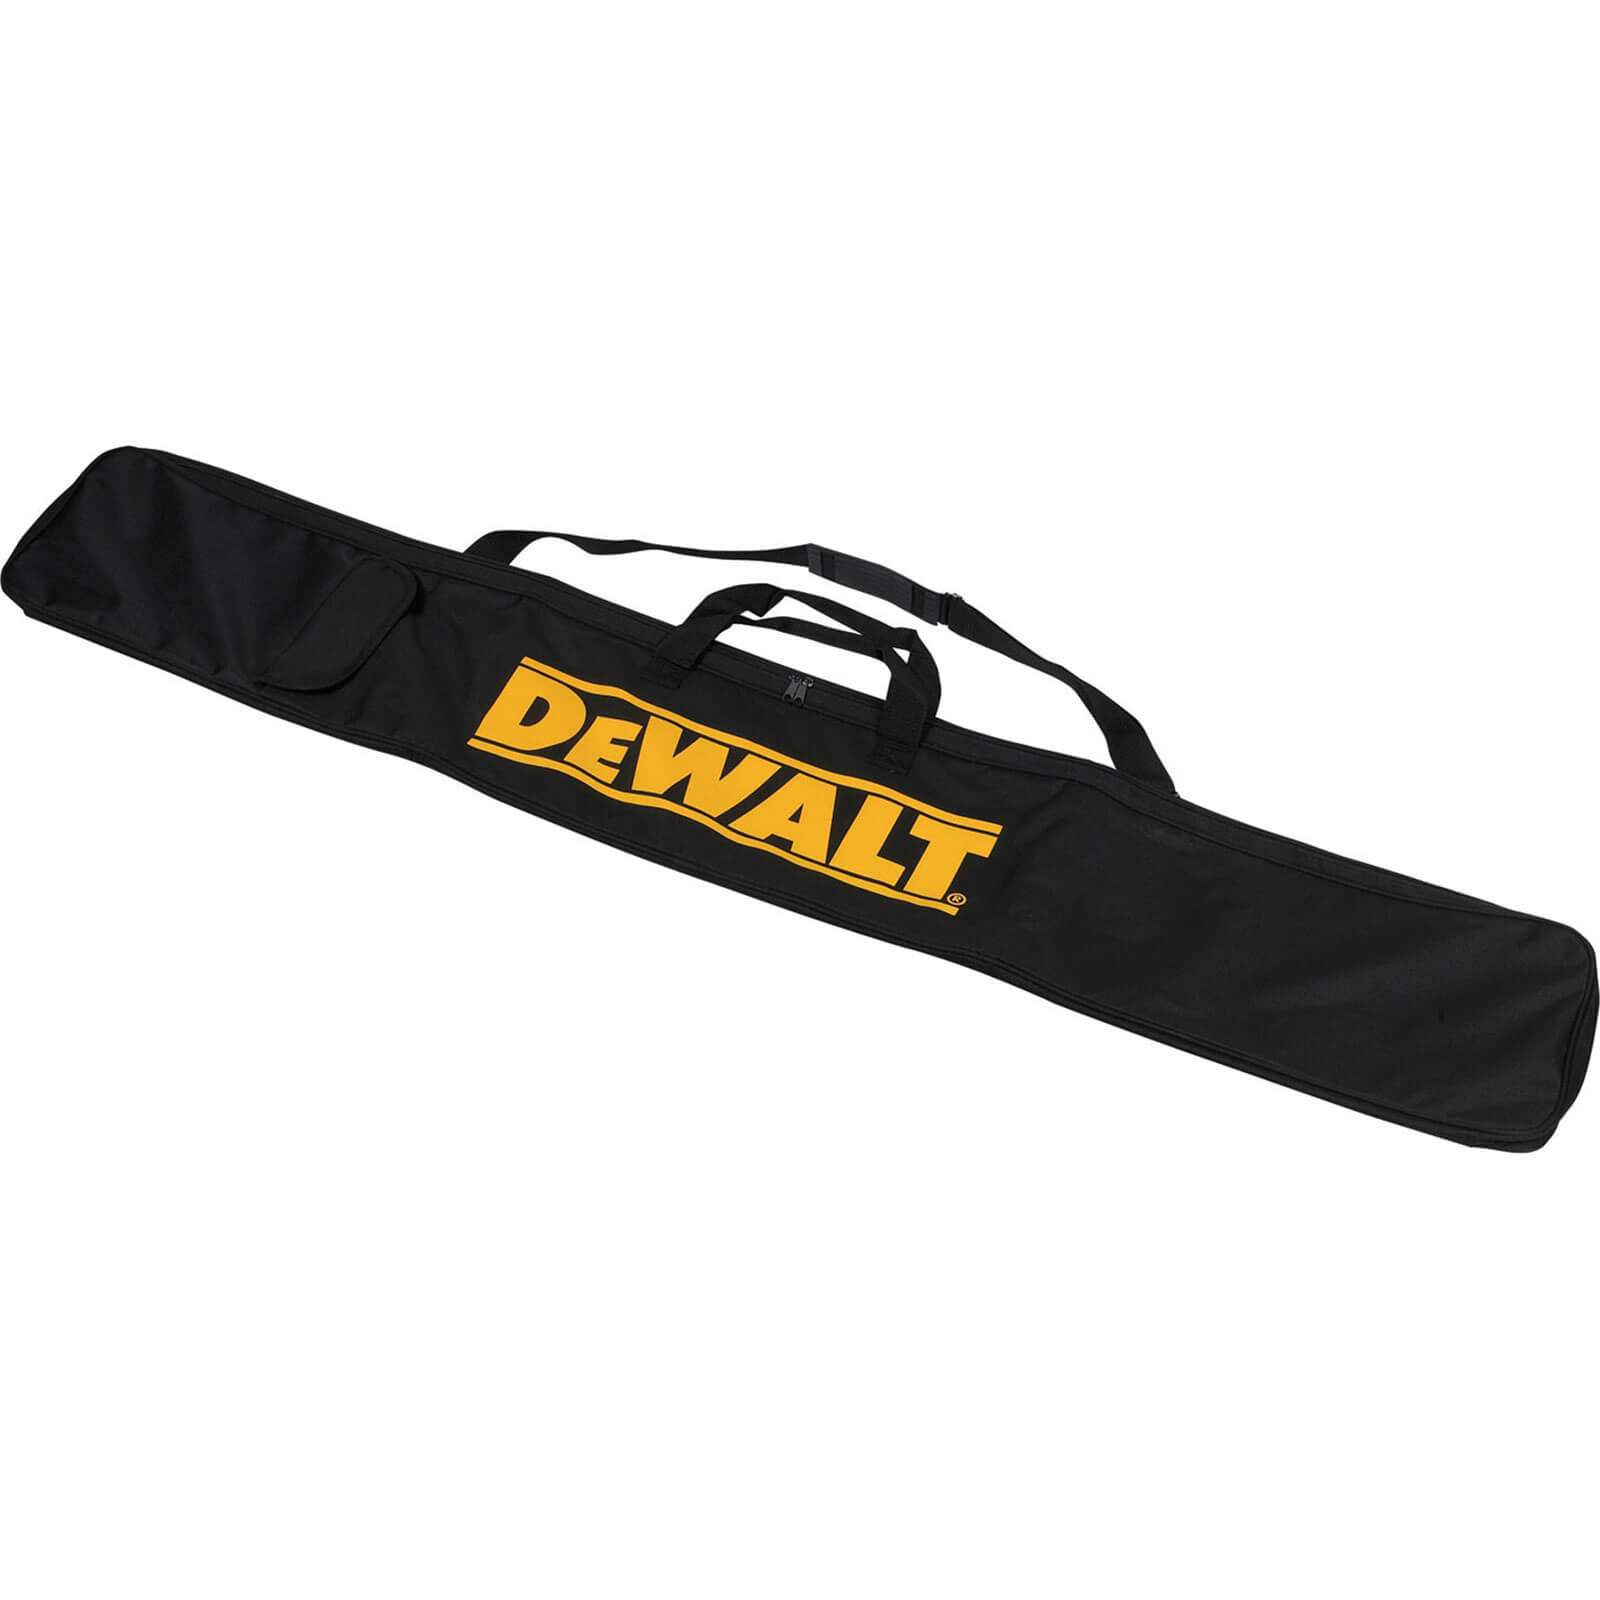 DeWalt Plunge Saw Guide Rail Bag